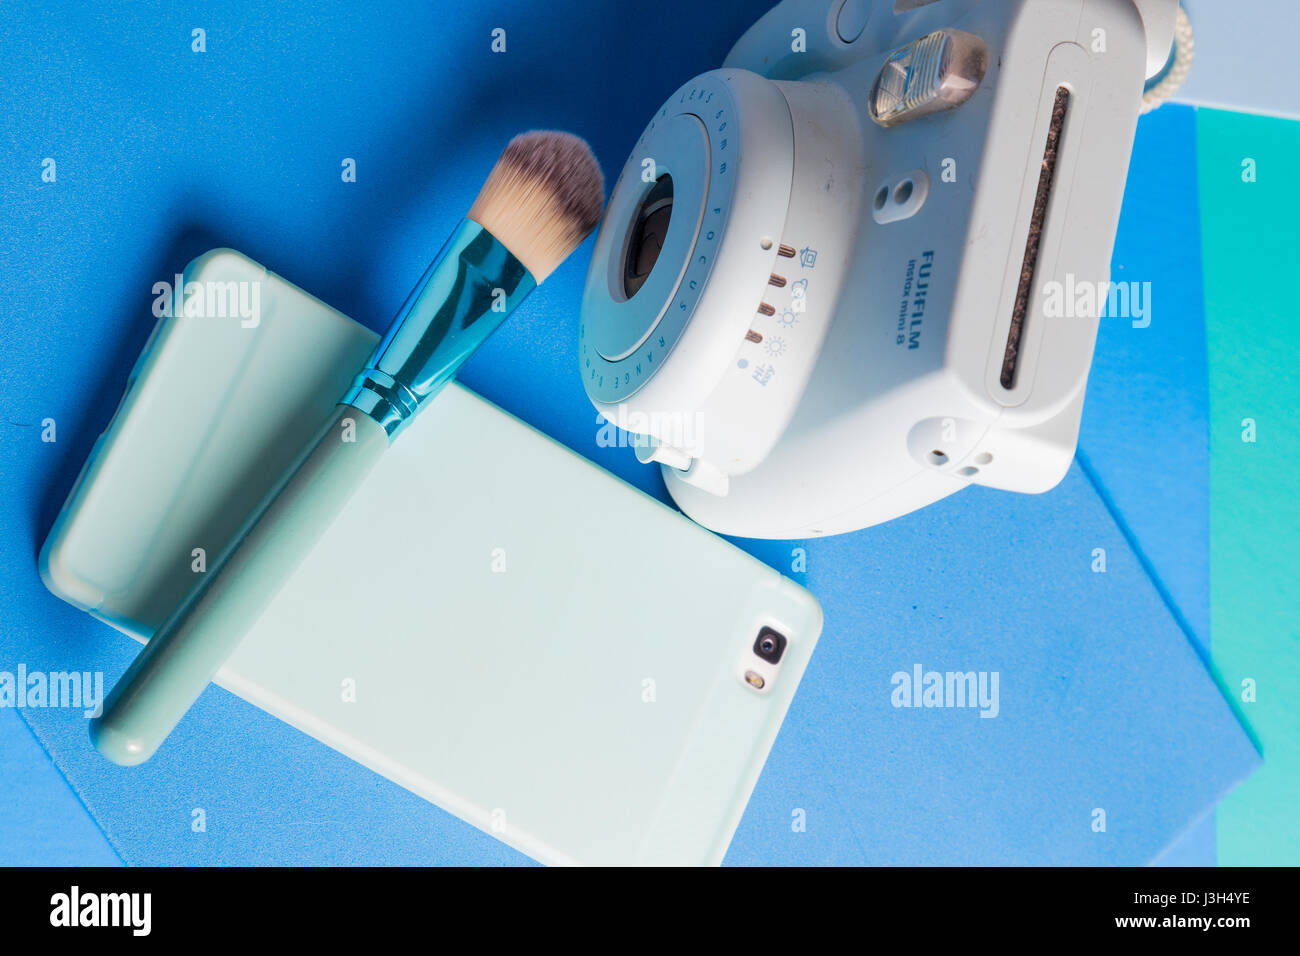 Sa vie sur des tons bleu : un appareil photo instantané, smartphone et un pinceau de maquillage placés dans un bleu de couleur Banque D'Images